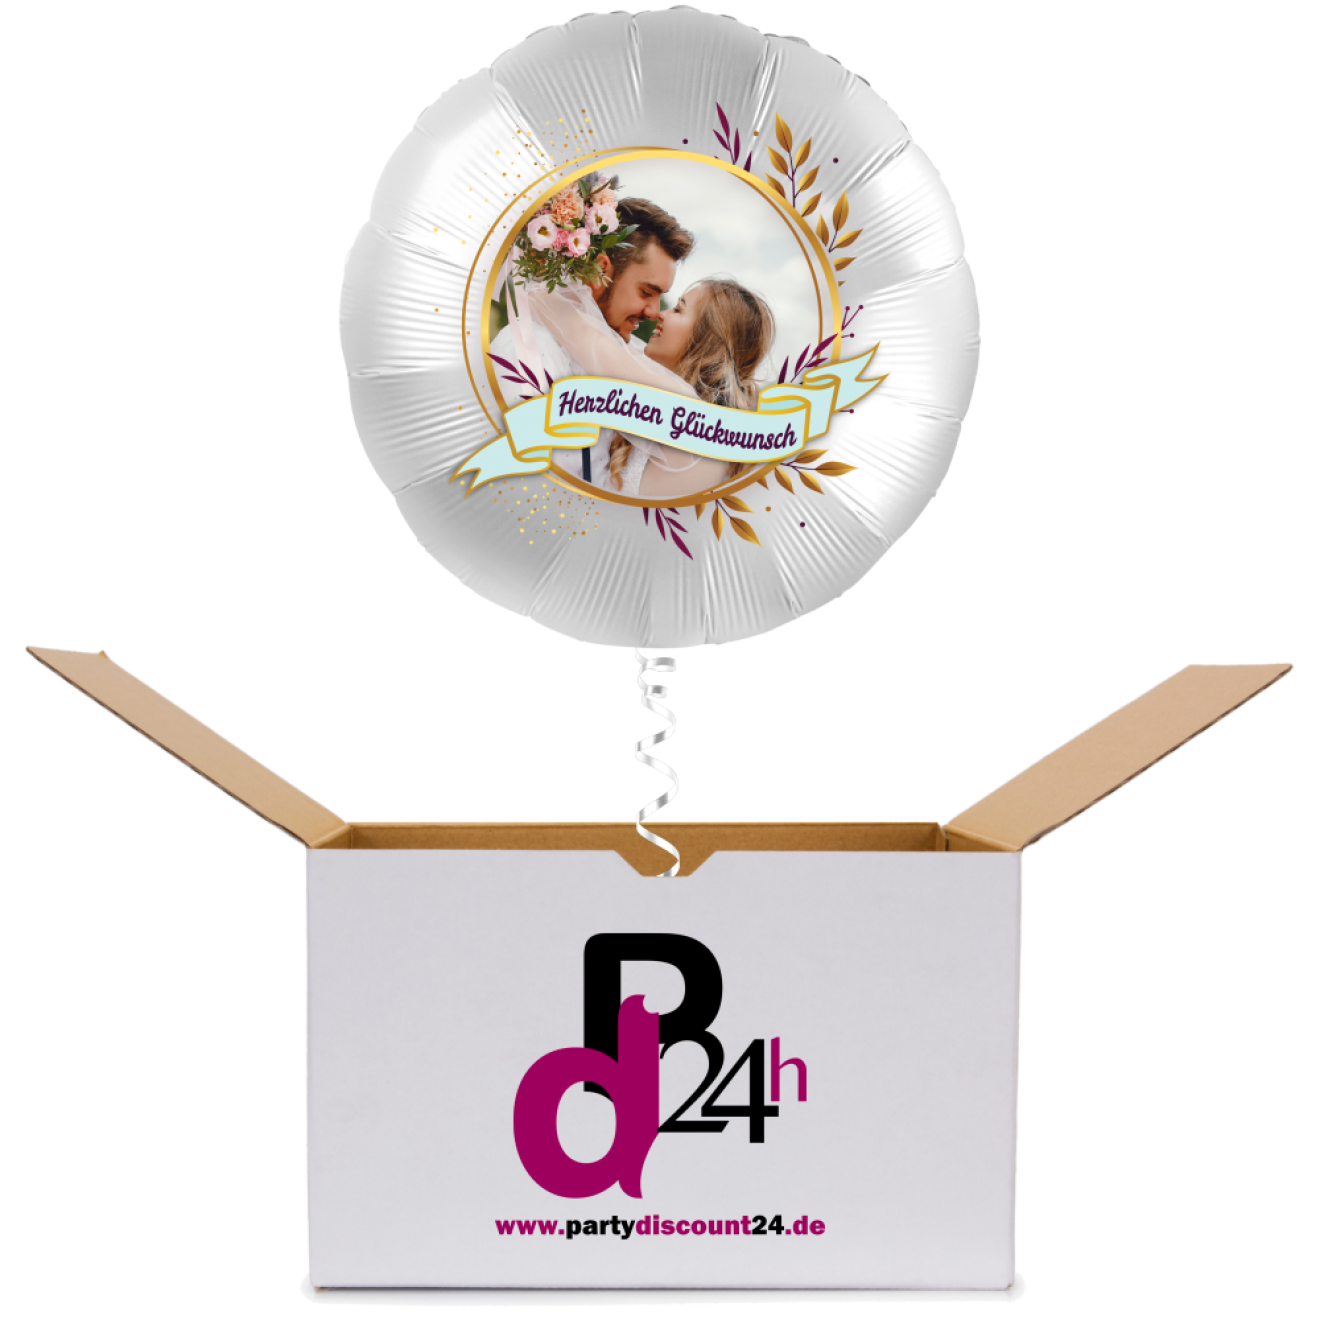 Ballonpost Fotodruck - Rundballon Herzlichen Glückwunsch Ø 45 cm | partydiscount24.de